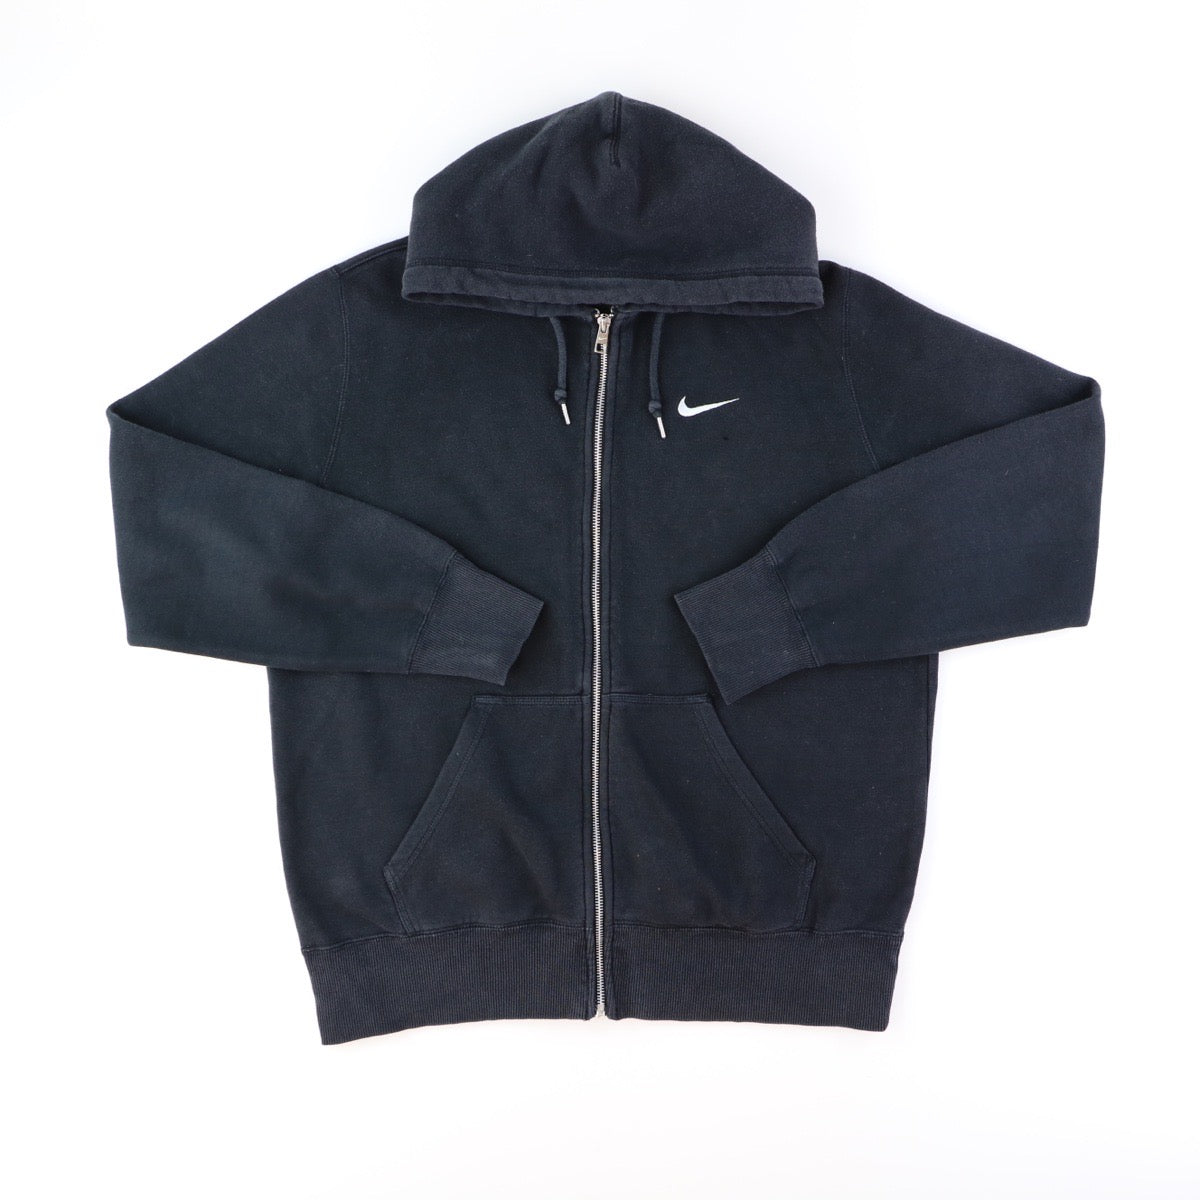 Nike zip up hoodie (L)